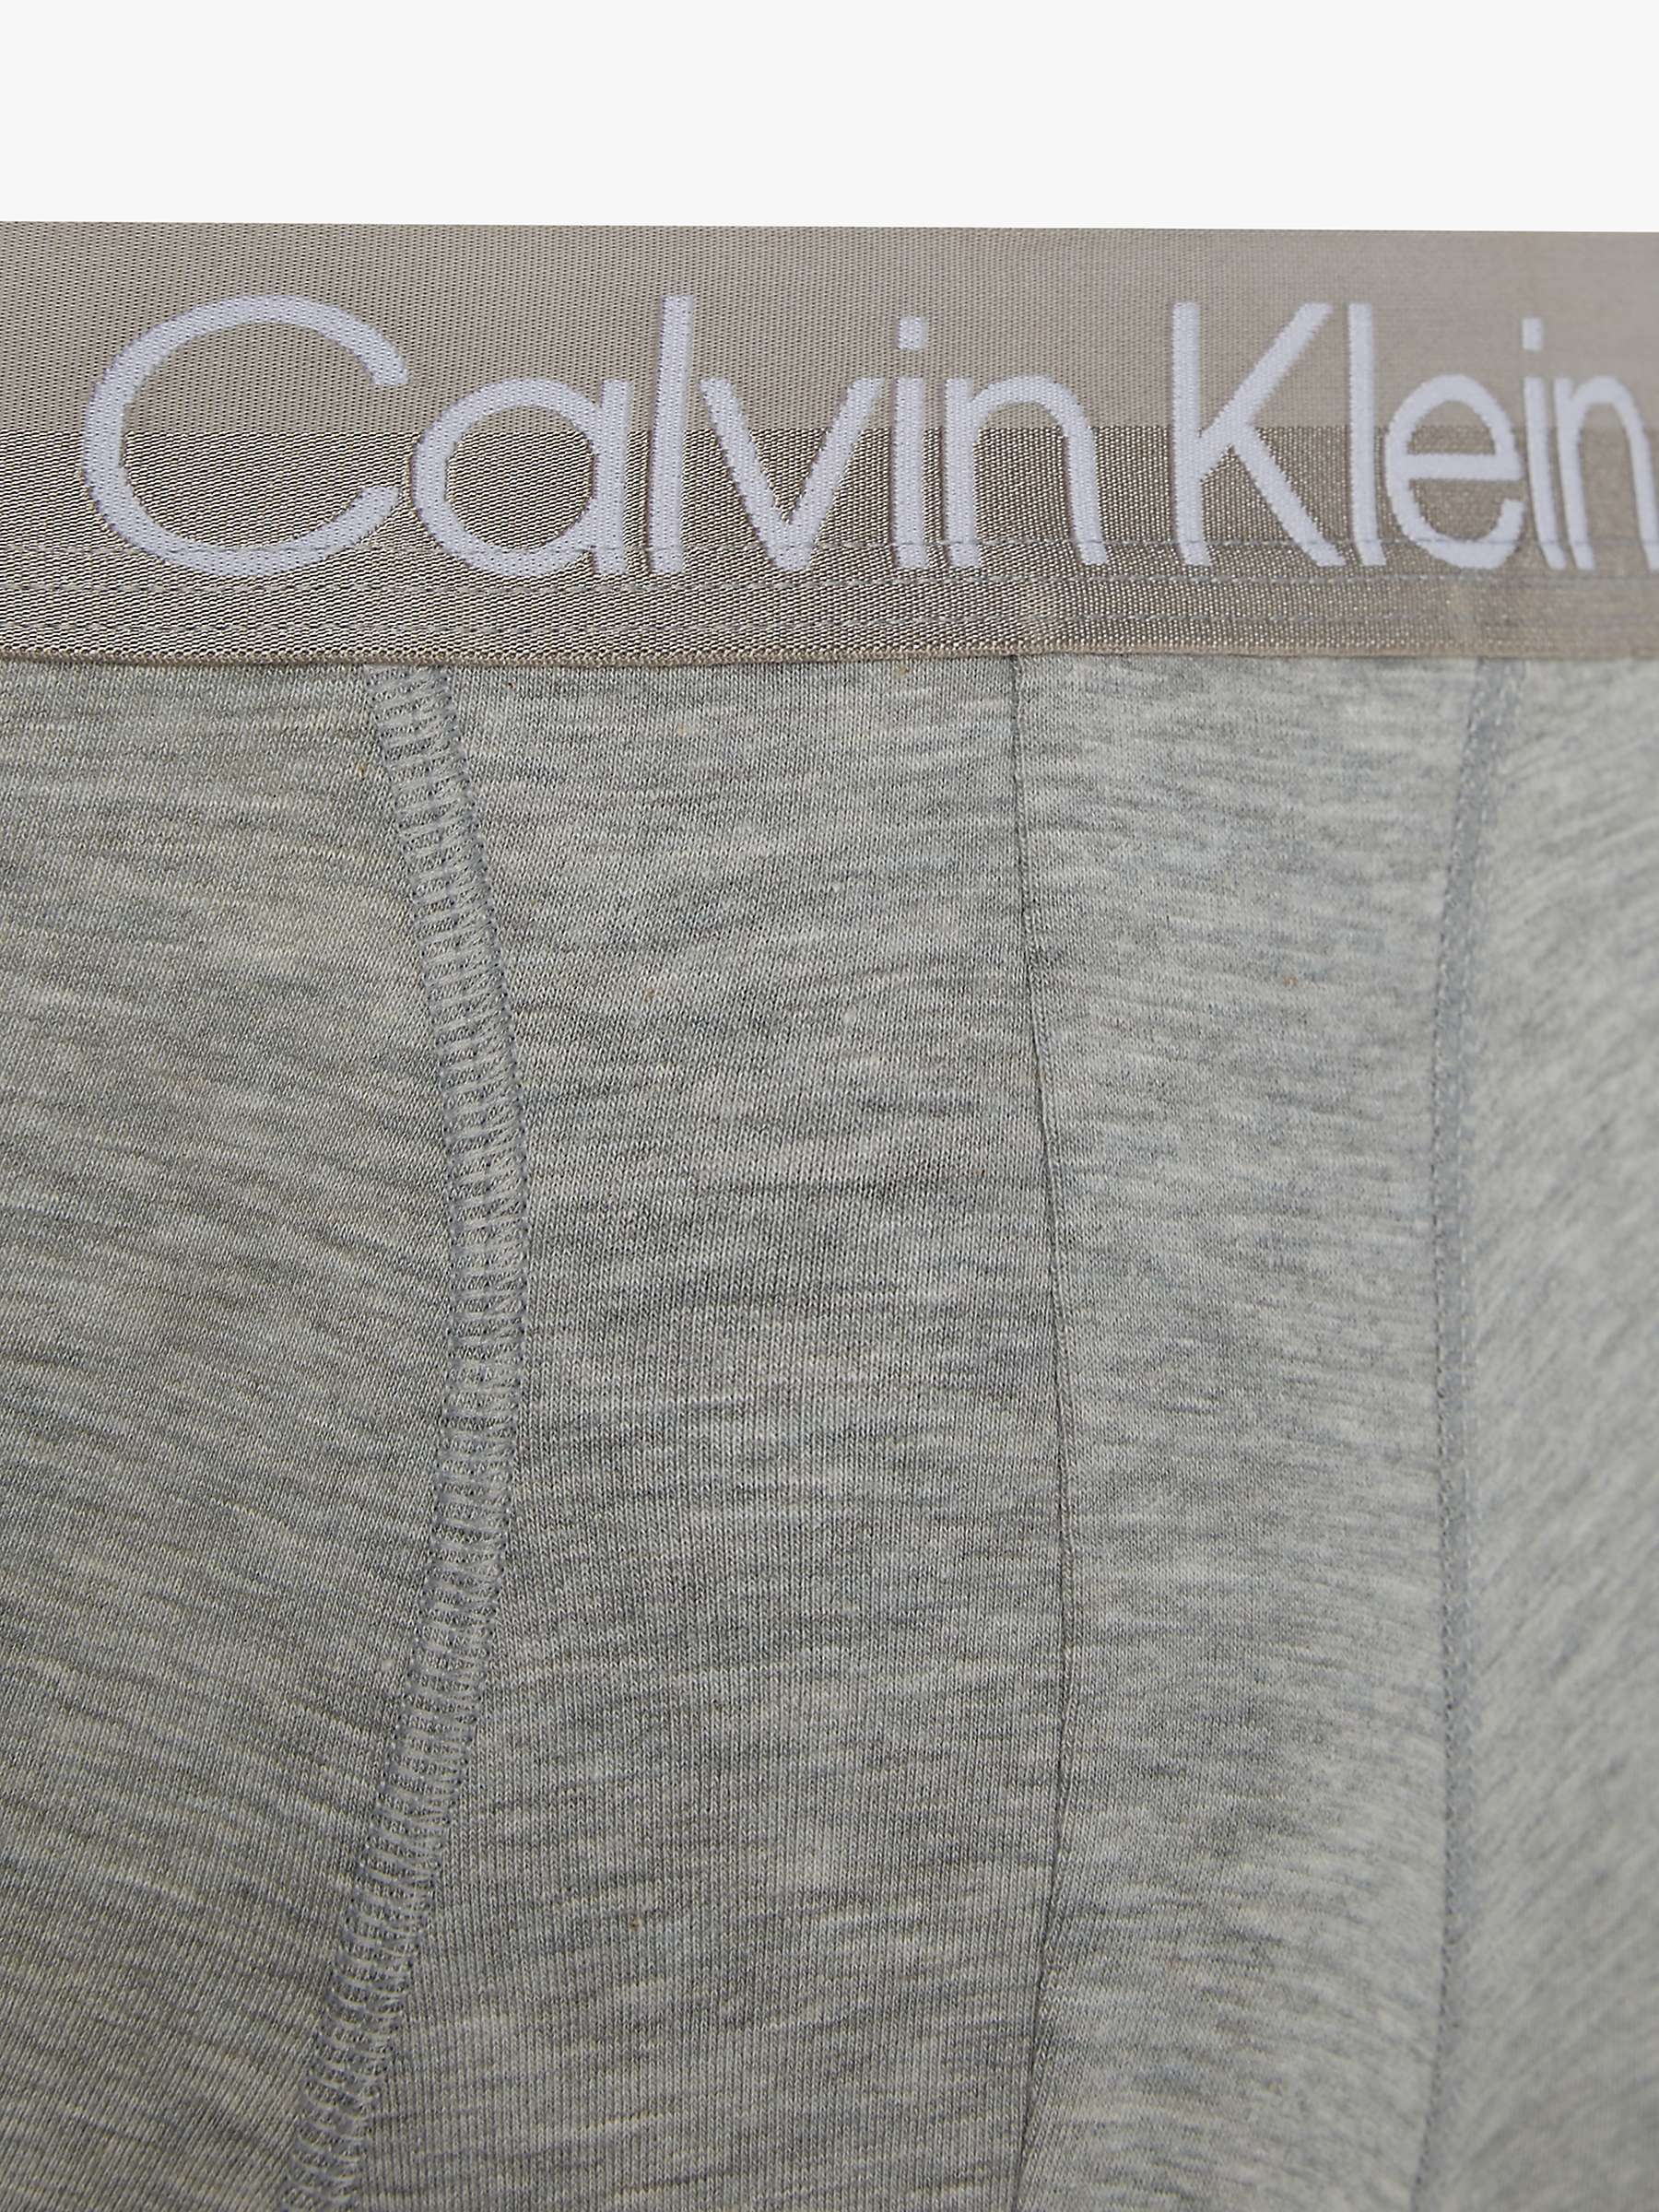 Buy Calvin Klein Plain Logo Trunks, Pack of 3, Multi Online at johnlewis.com